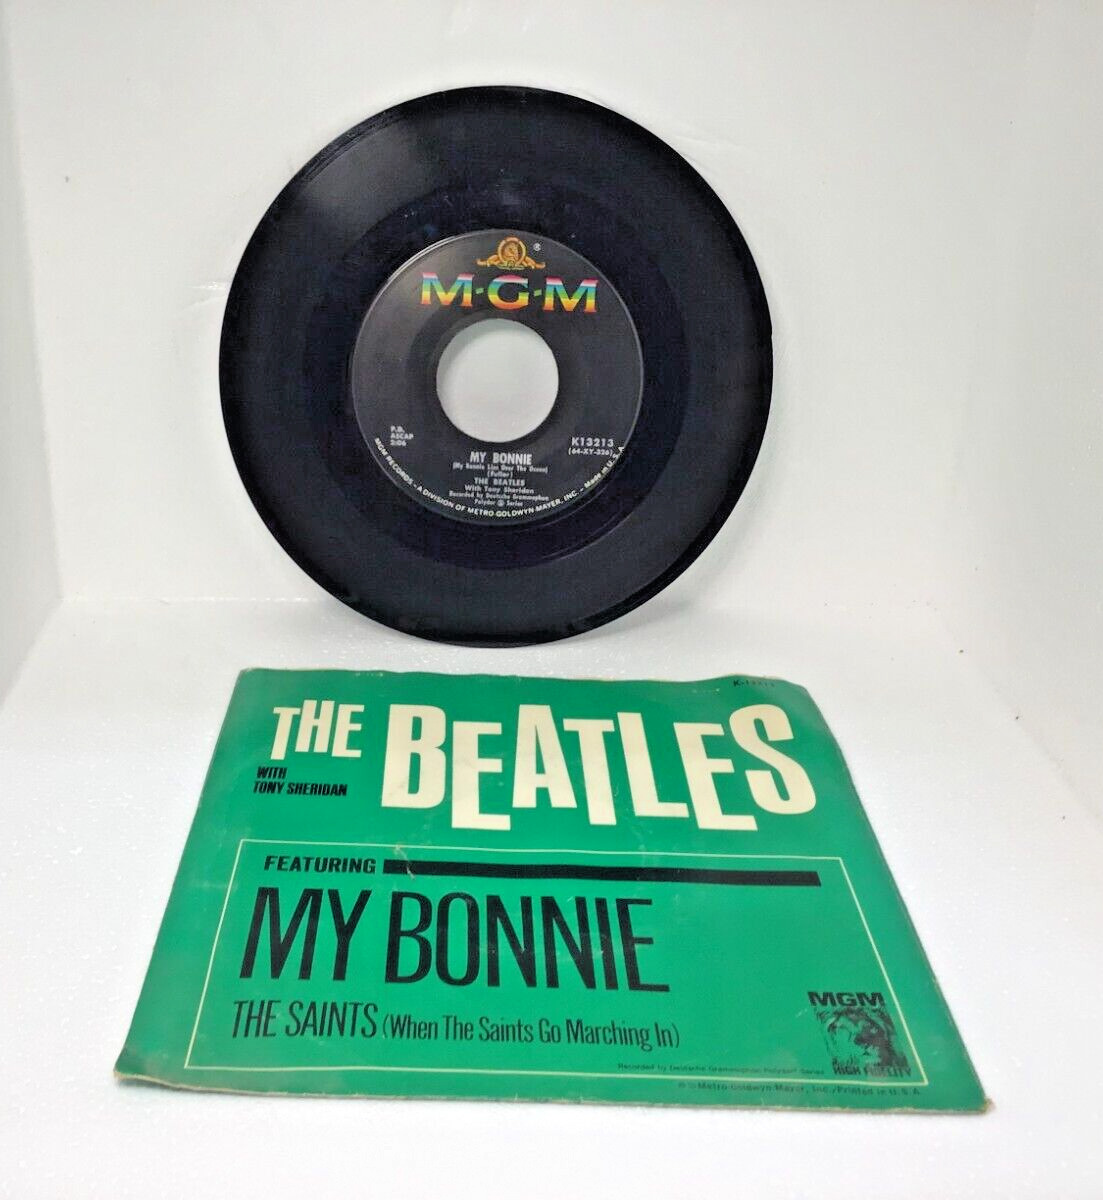 Vintage Vinyl 45 Record The Beatles My Bonnie